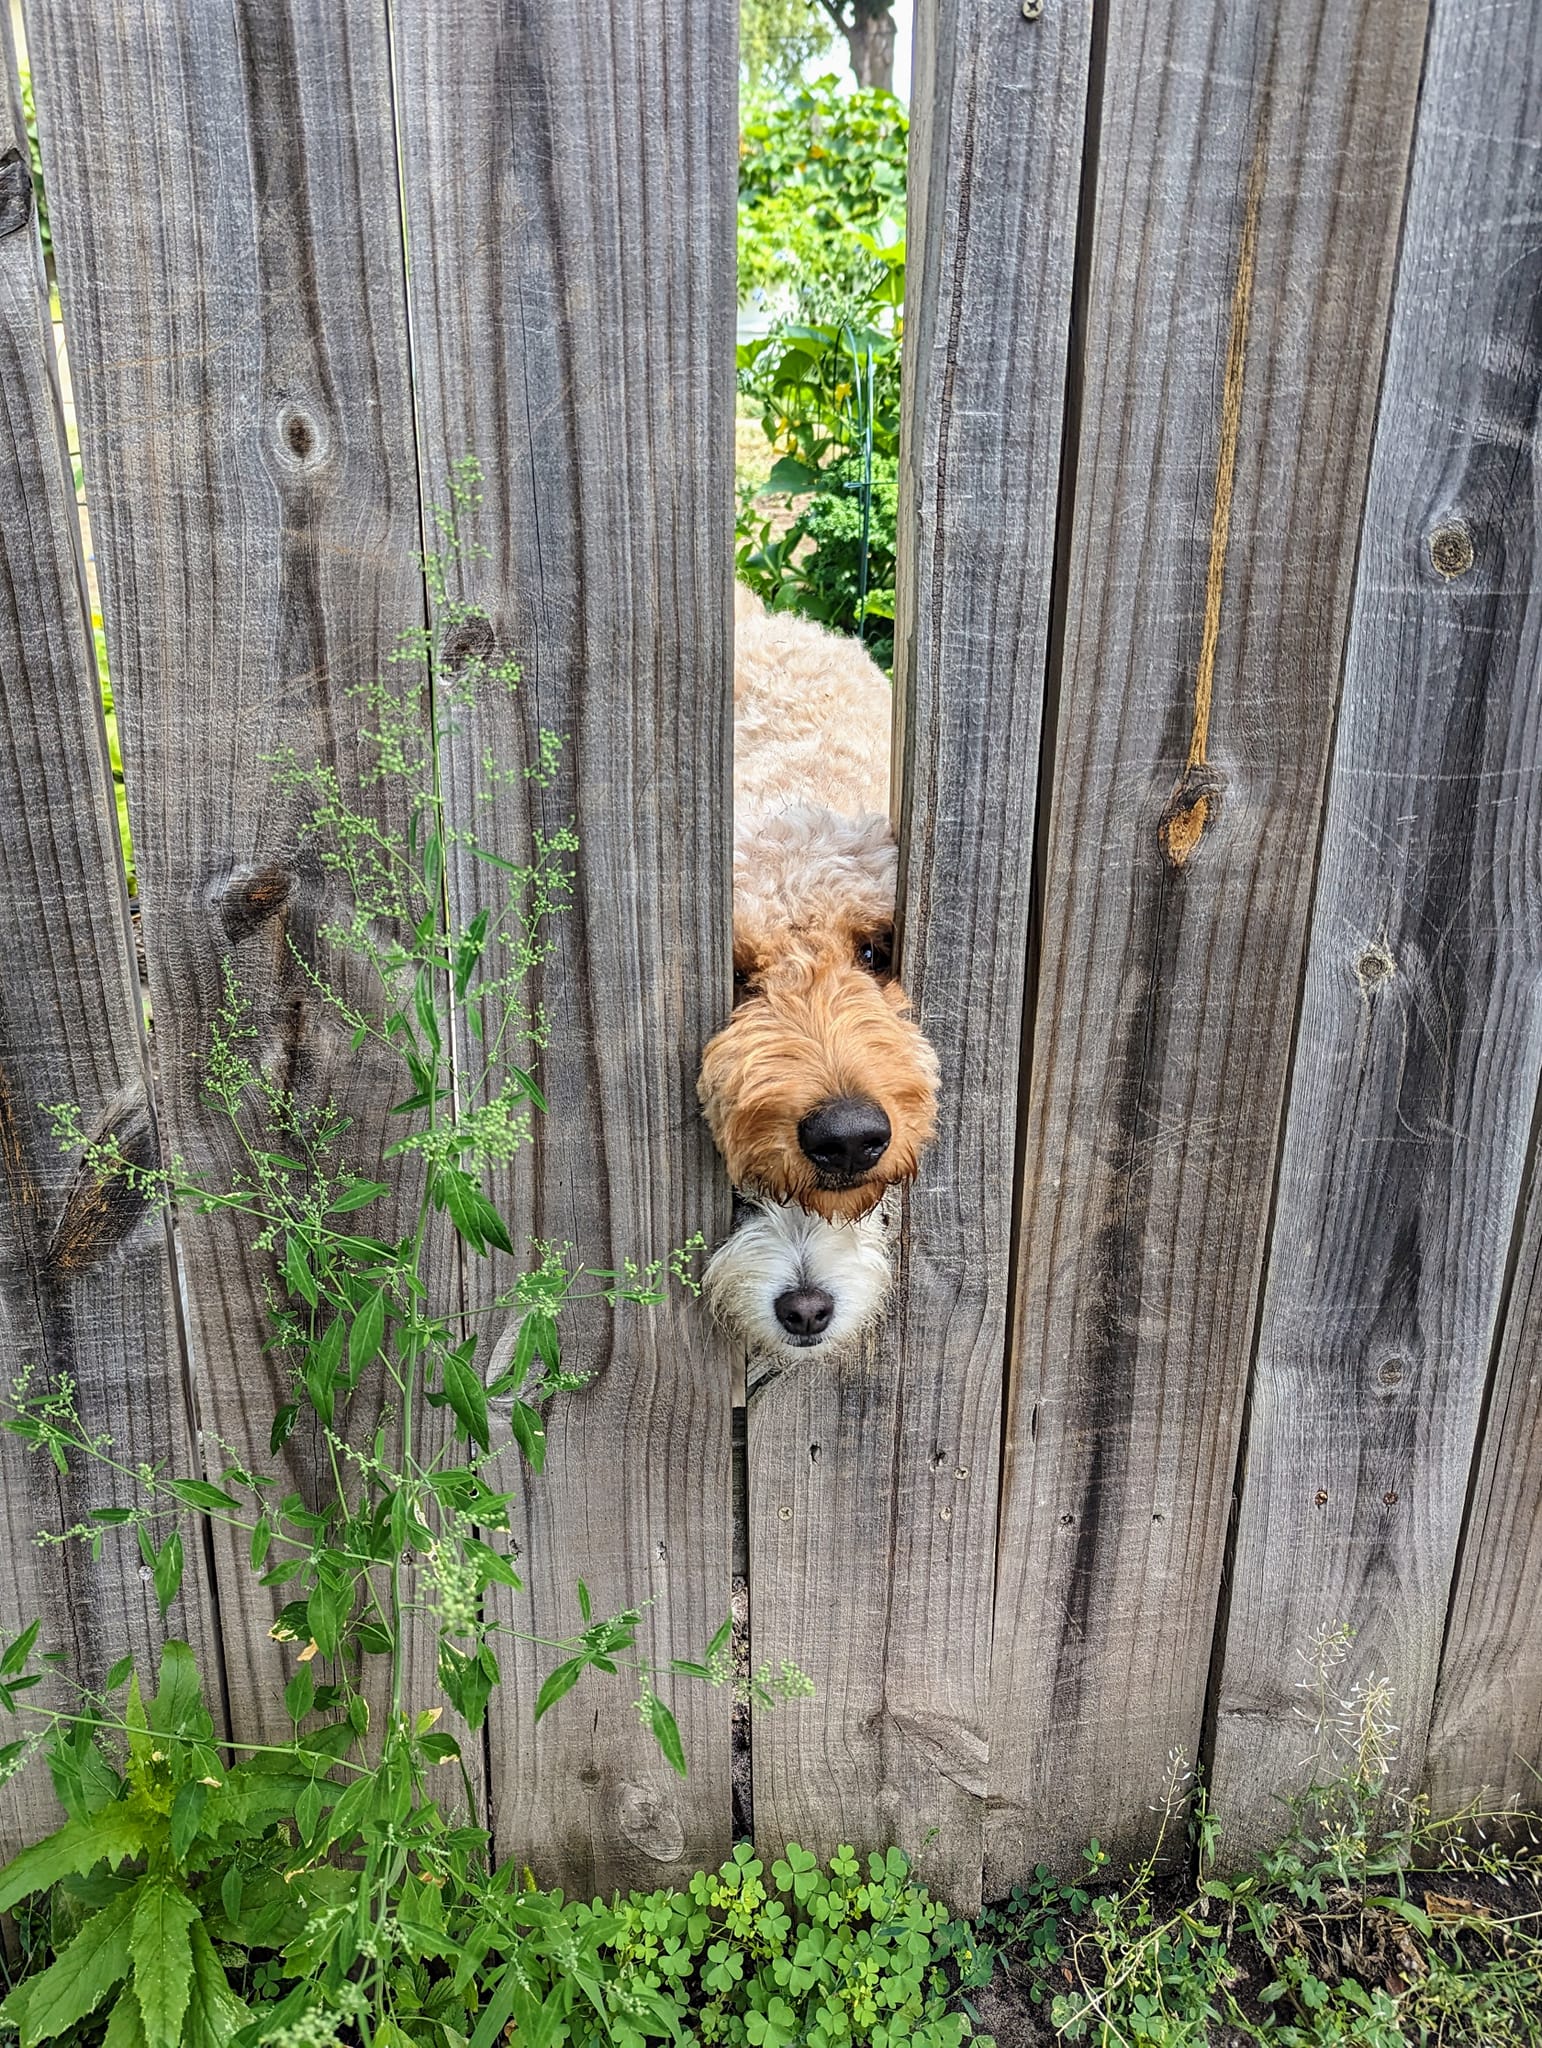 Lorsque je promène mon chien tous les jours, nous avons l’habitude de voir le nez sur le dessus pointer sa petite tête hors de la clôture de sa cour lorsque nous passons devant lui, mais aujourd’hui, nous avons eu droit à un bonjour supplémentaire !